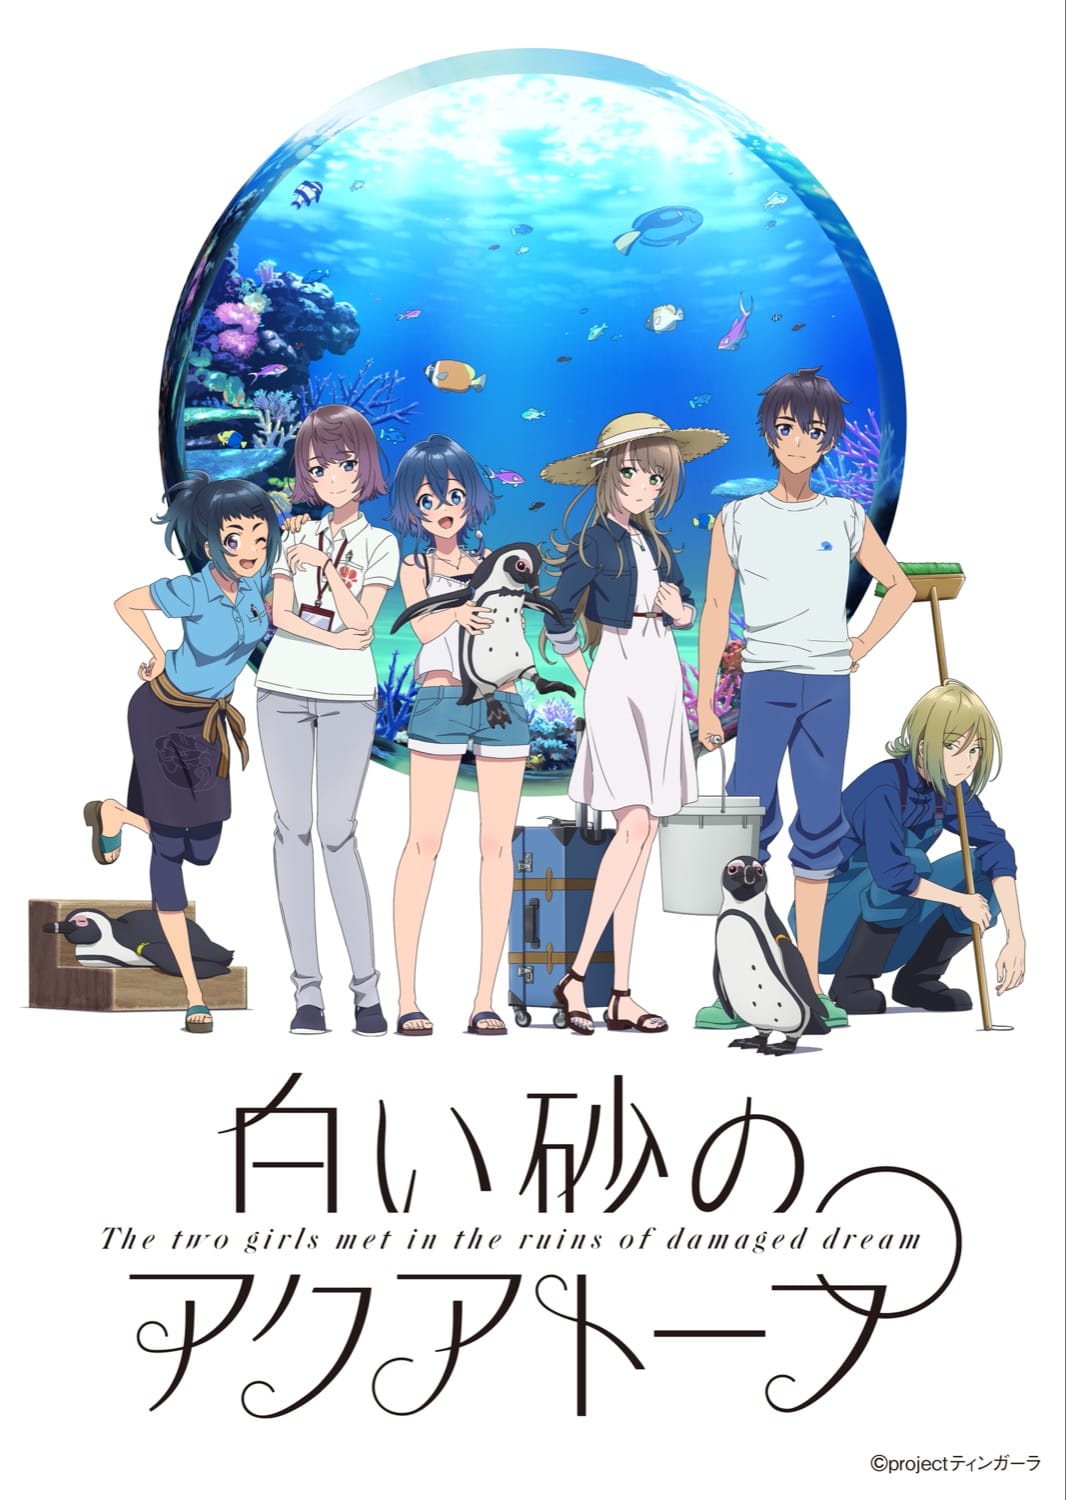 TVアニメ「白い砂のアクアトープ」7月8日放送開始! 追加キャストも発表!